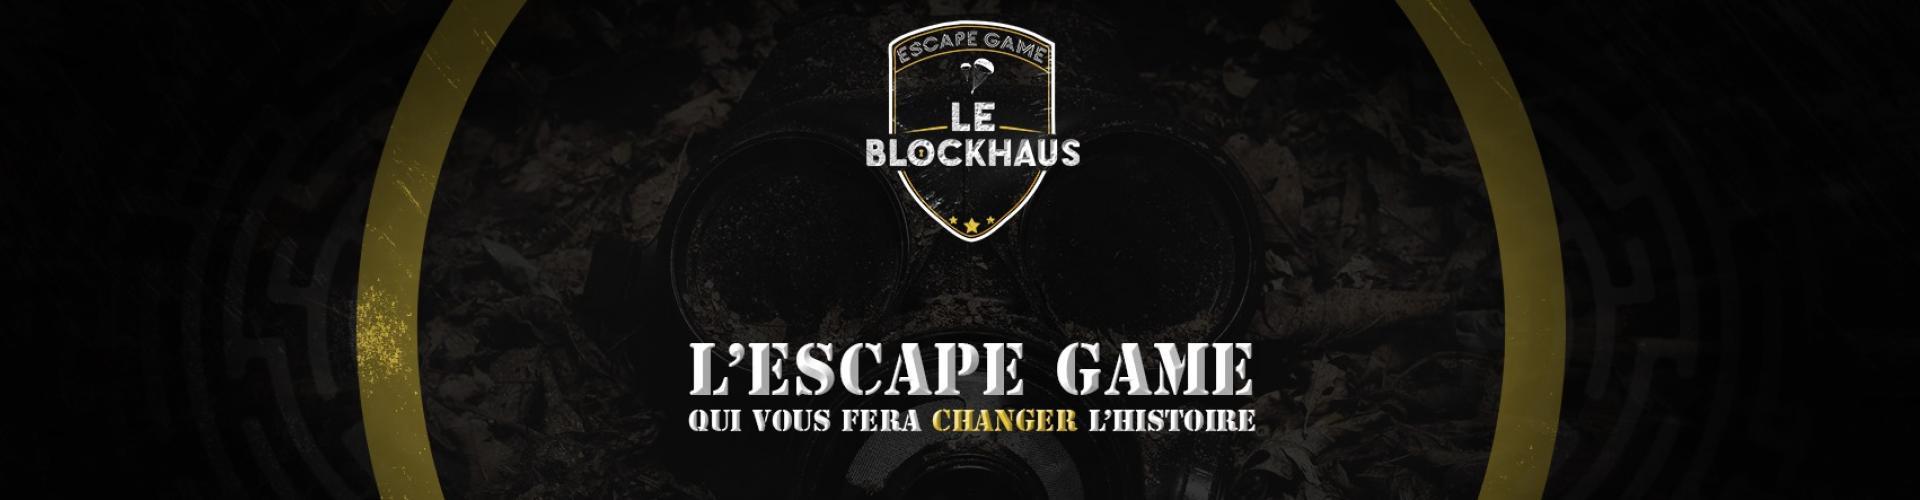 Le Blockhaus - Escape Game (Carentan, Manche) - Prestataire de Mariage en Normandie